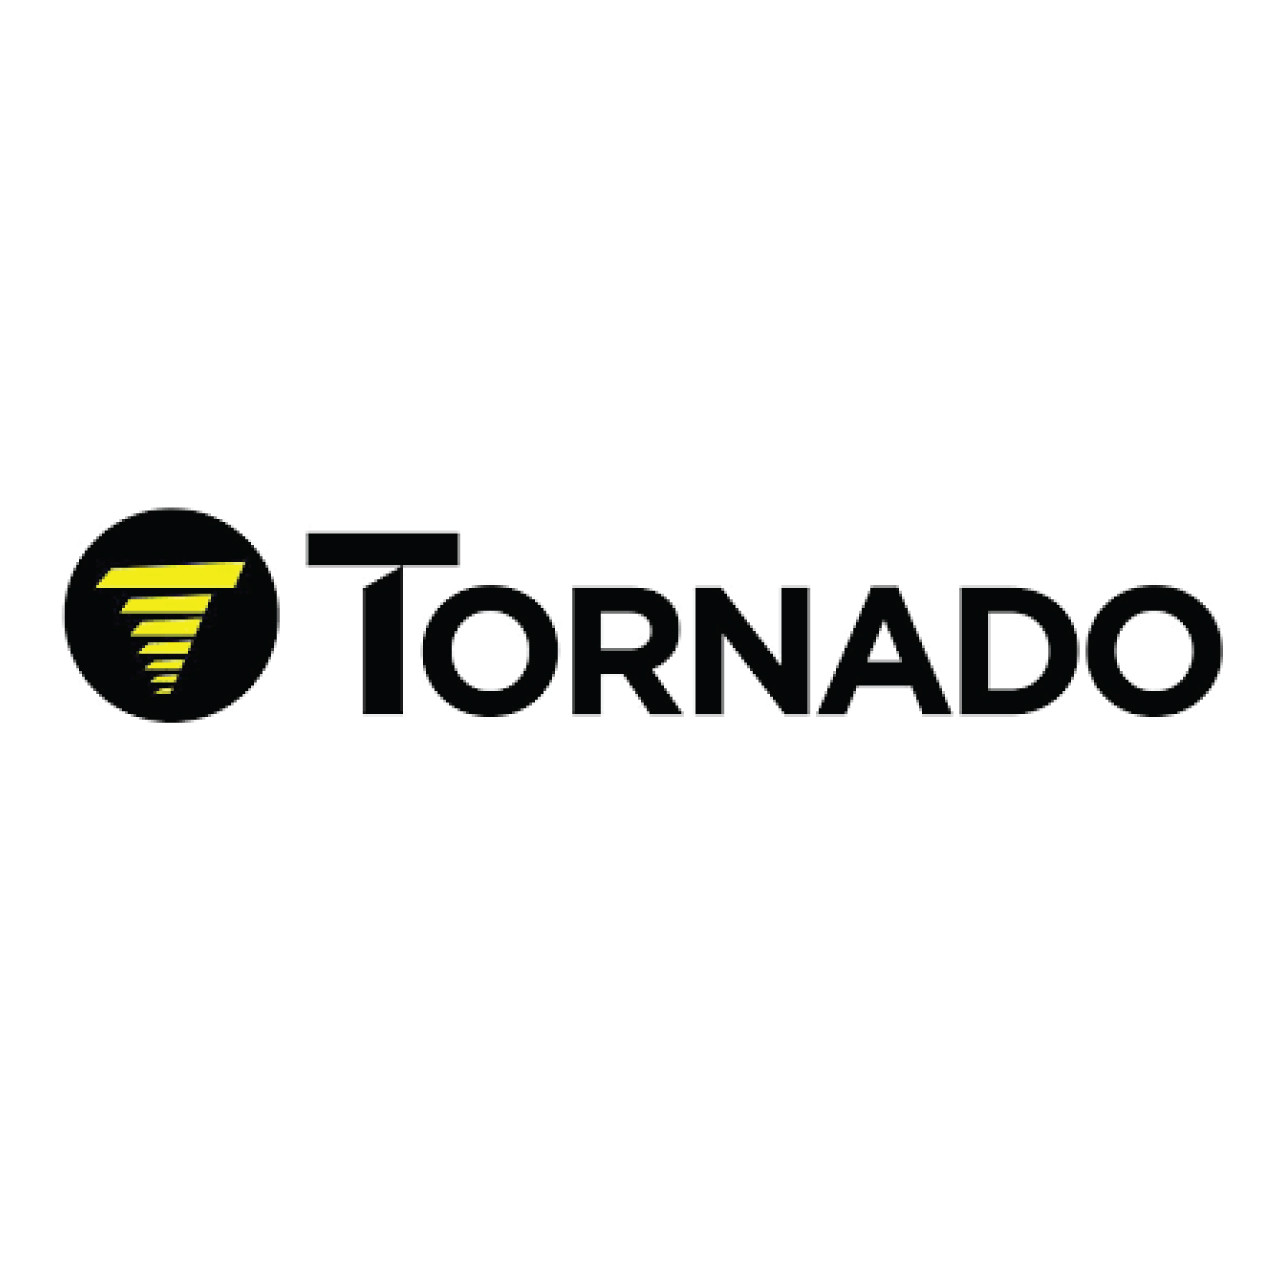 03-6092-0067, Tornado 03-6092-0067, Tornado HANDLE INTERLOCK FOR PAS14G, Tornado parts